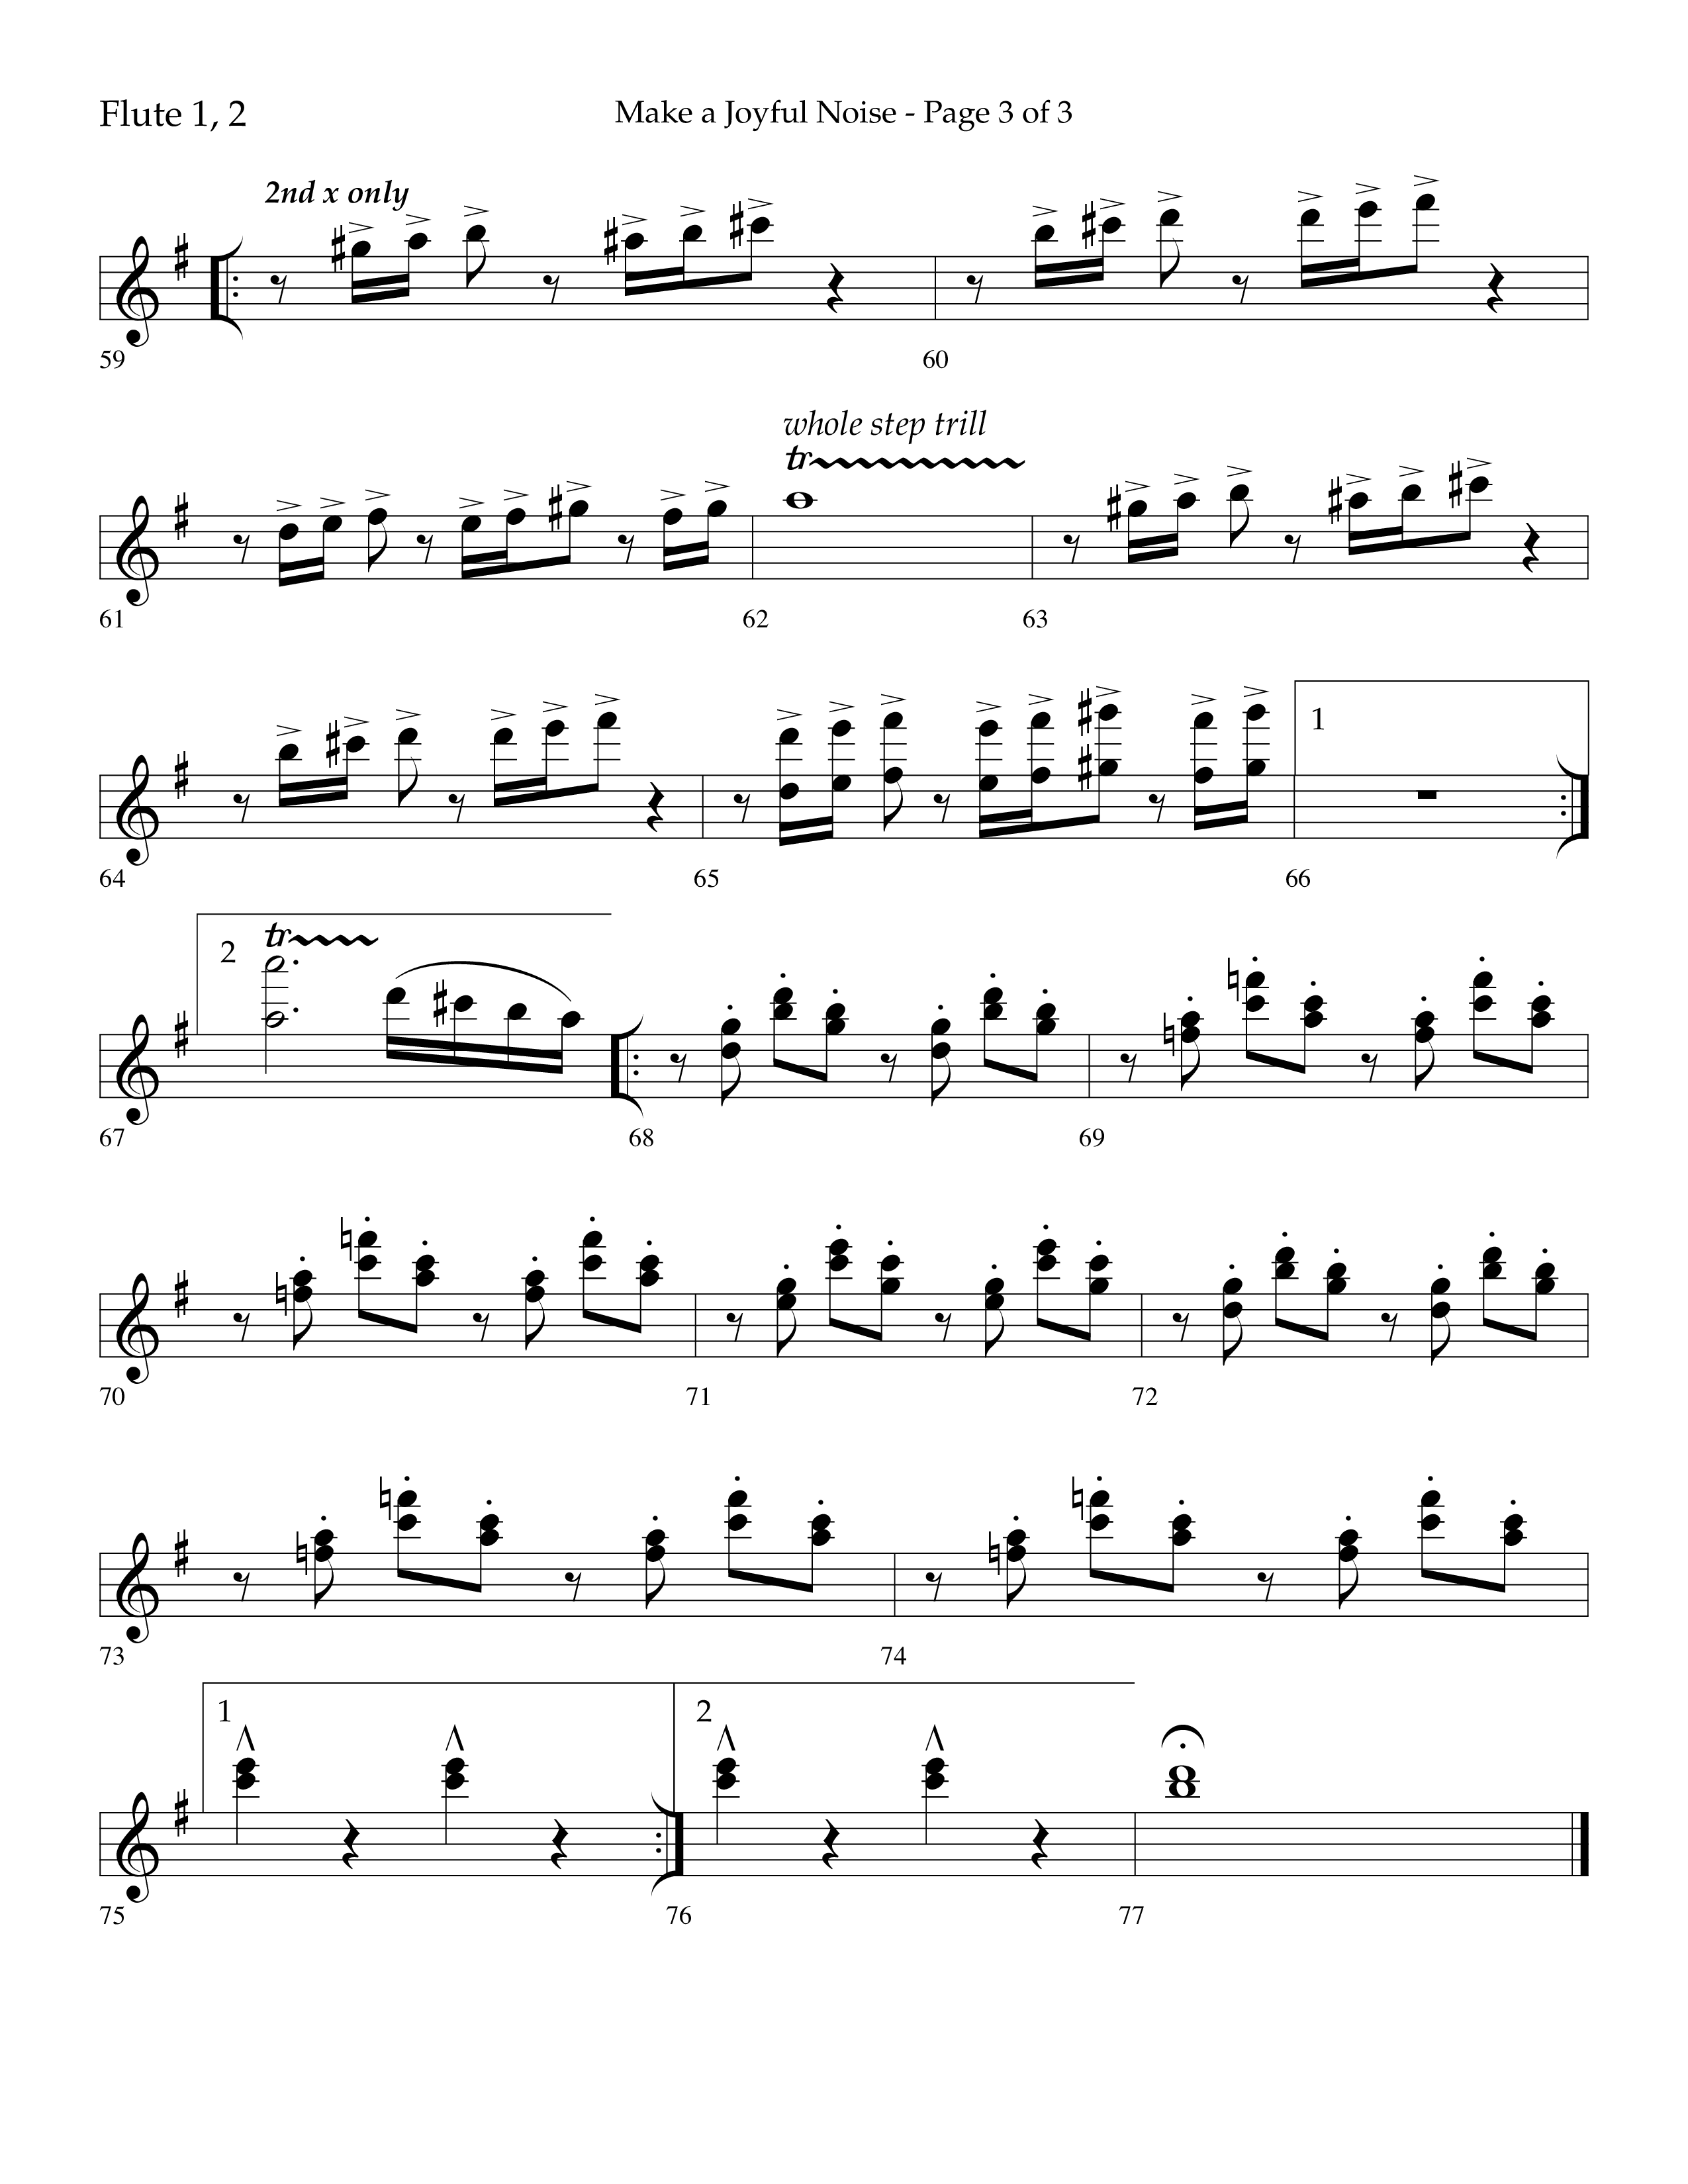 Make A Joyful Noise (Choral Anthem SATB) Flute 1/2 (Lifeway Choral / Arr. David Wise / Orch. Daniel Semsen)